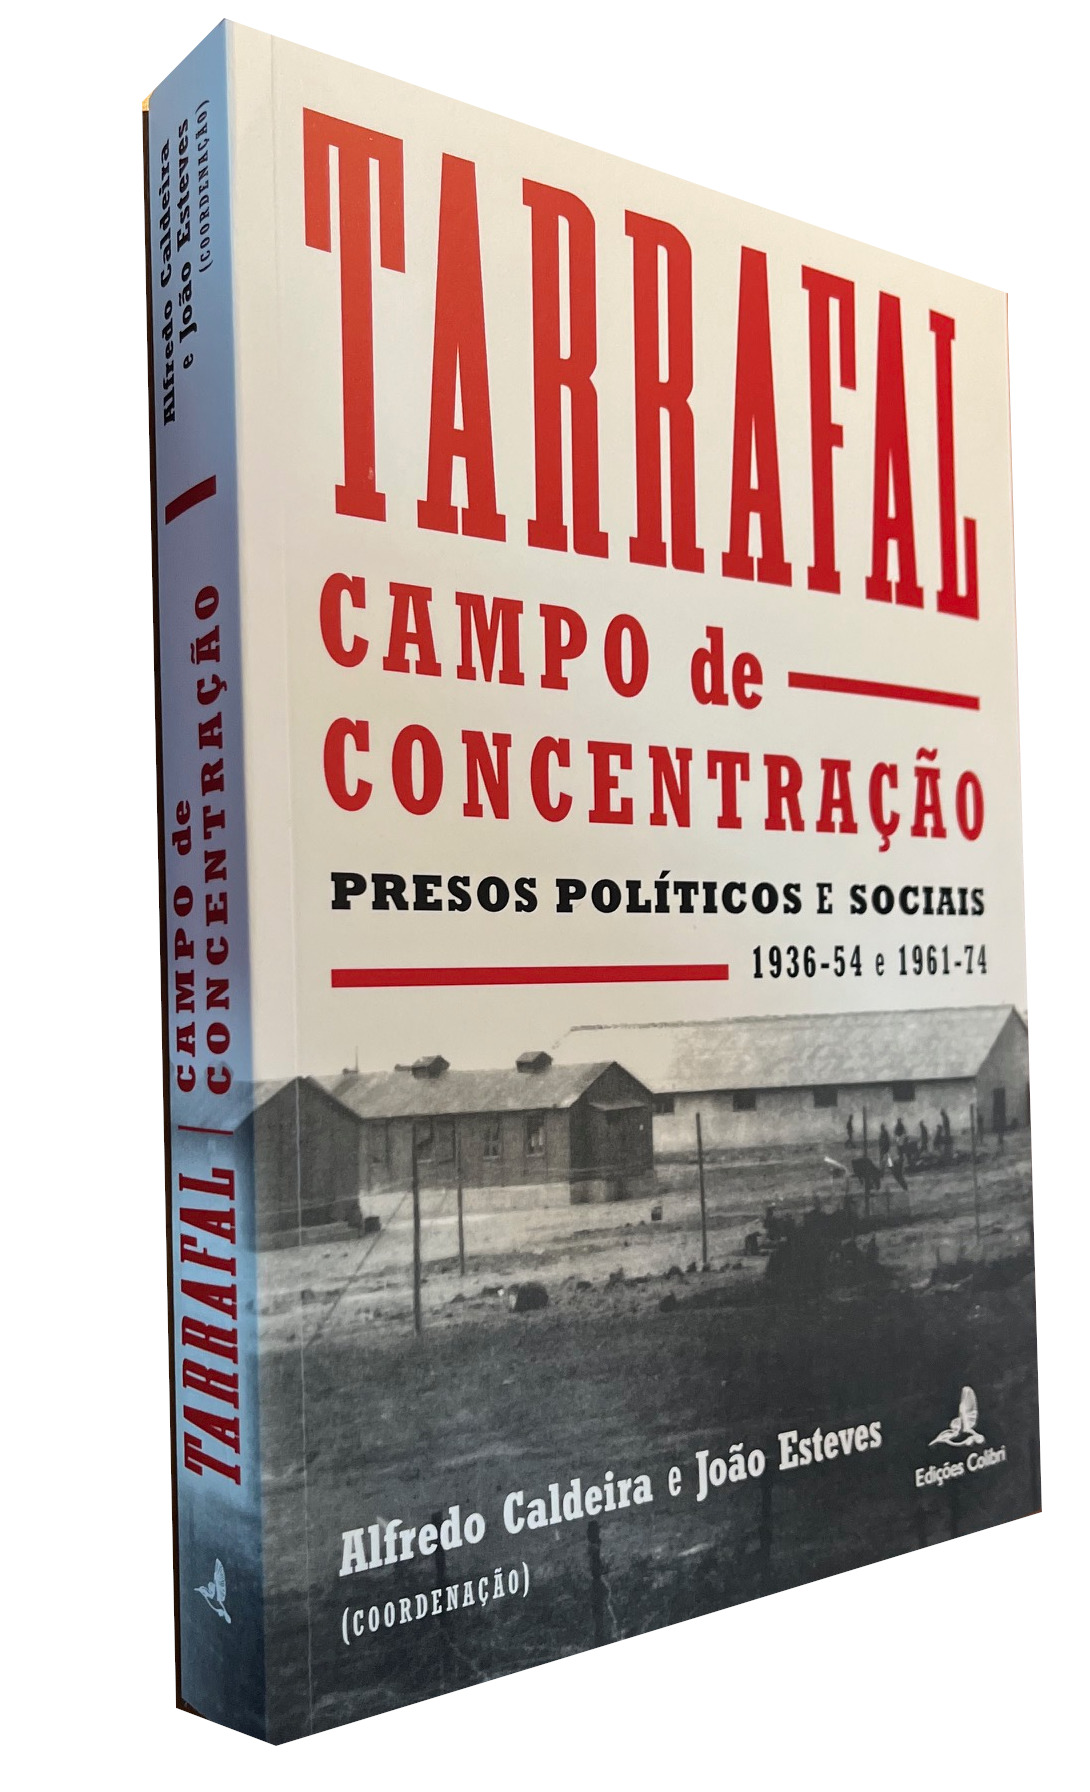 Presos e Perseguidos no Tarrafal (1936-1954 e 1961-1974)